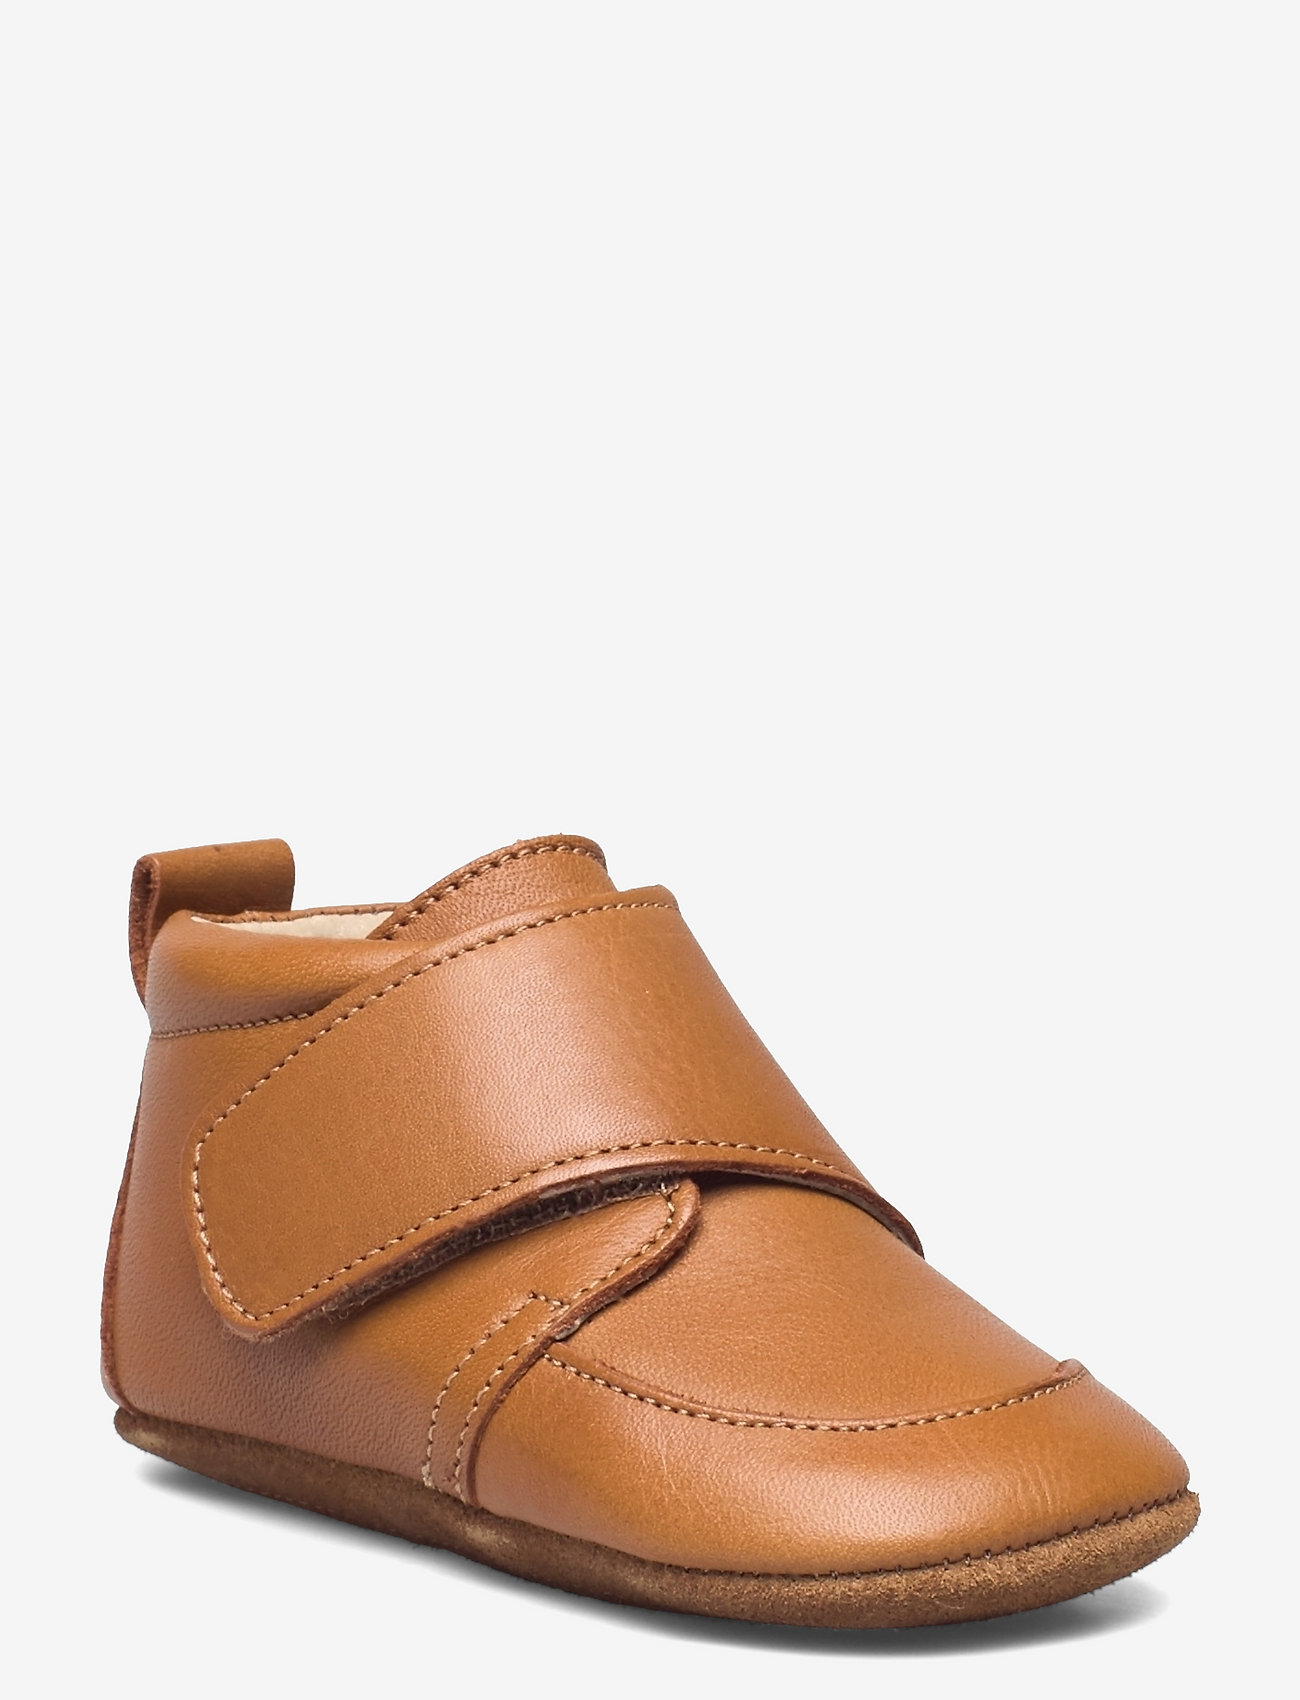 En Fant - Baby Leather slippers - verjaardagscadeaus - leather brown - 0